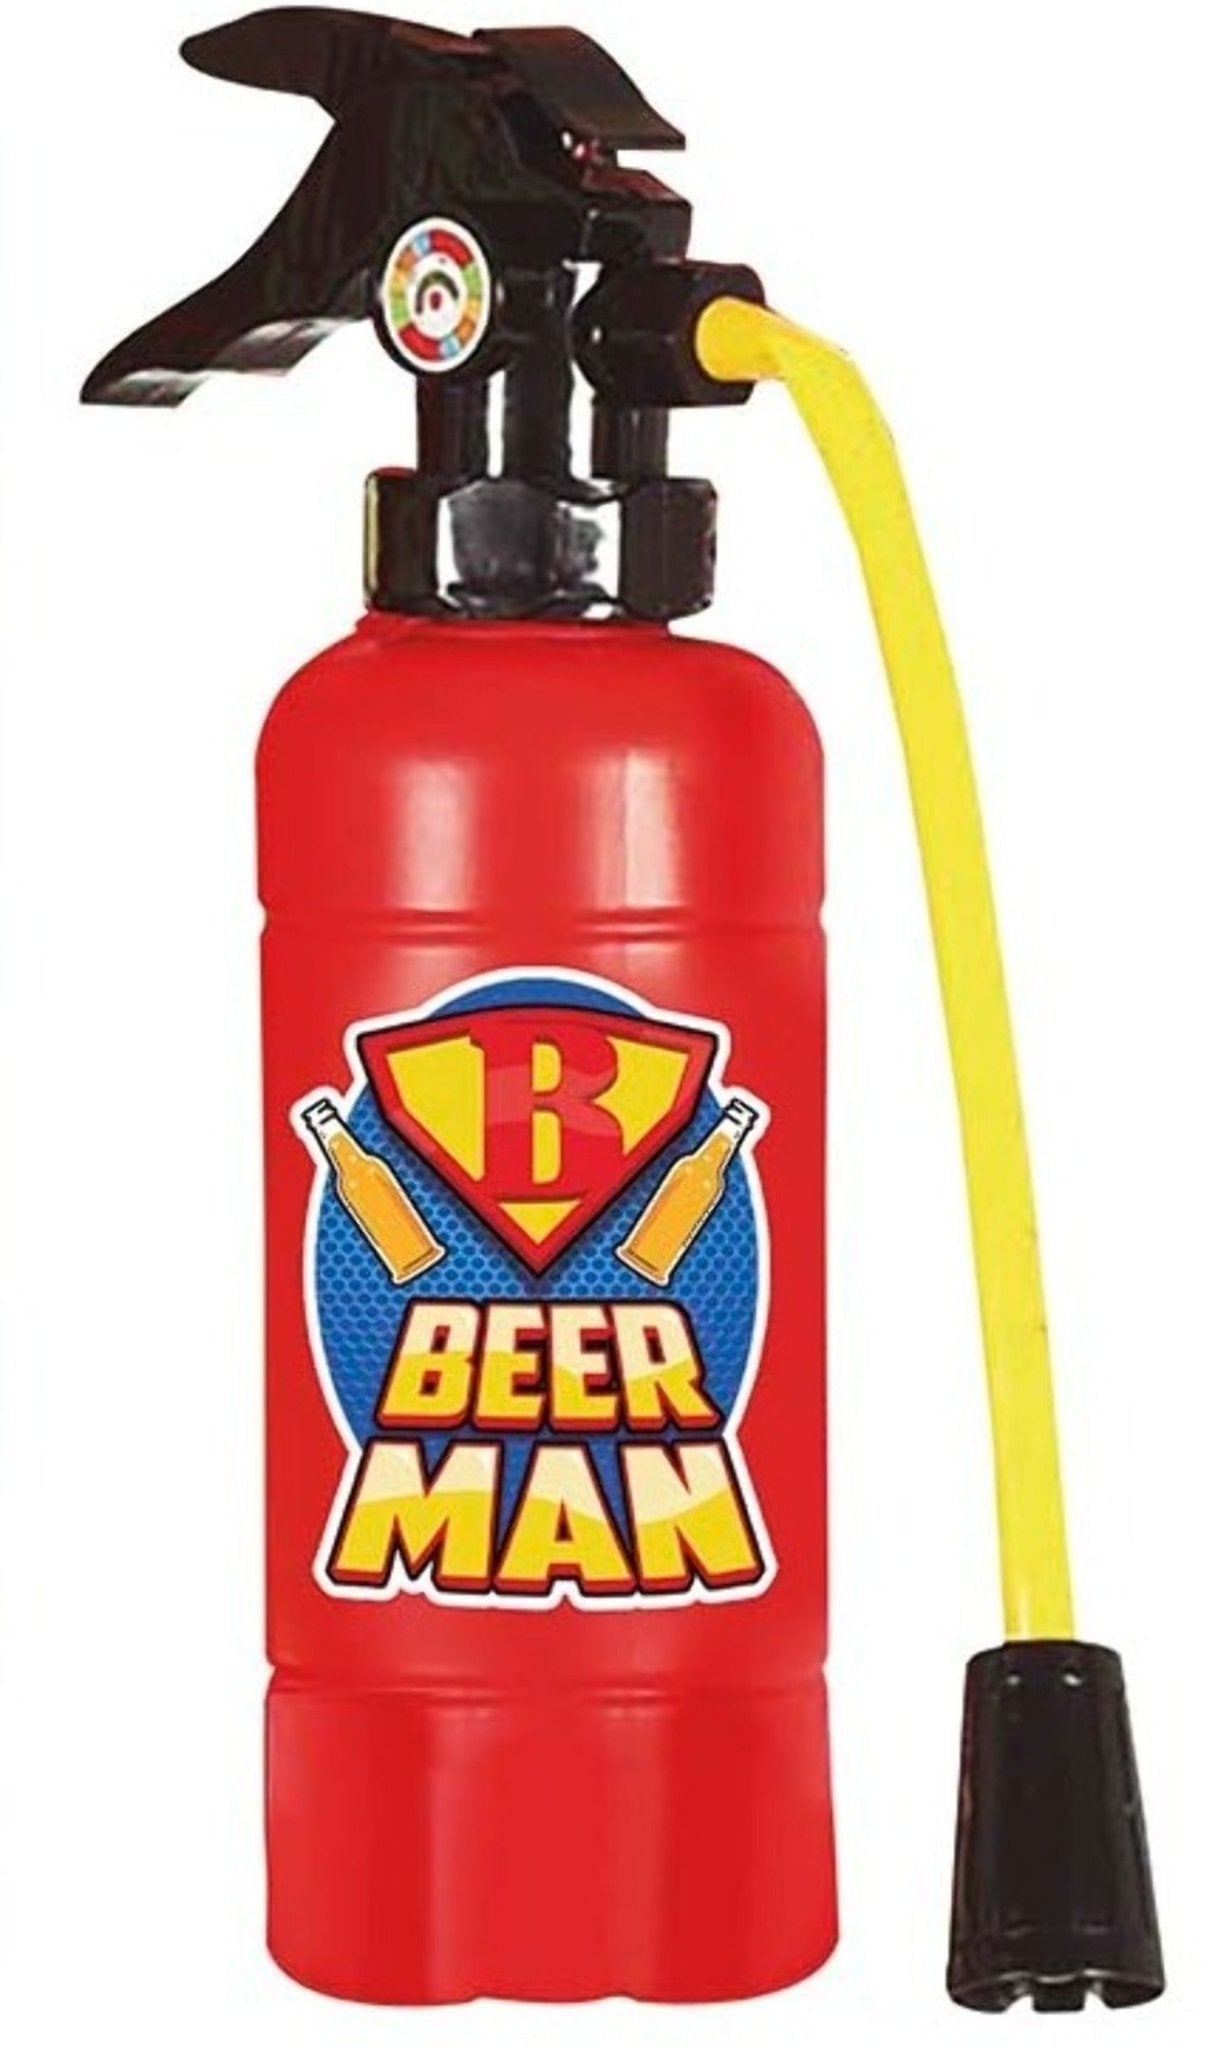 Feuerlöscher für Beerman Drink